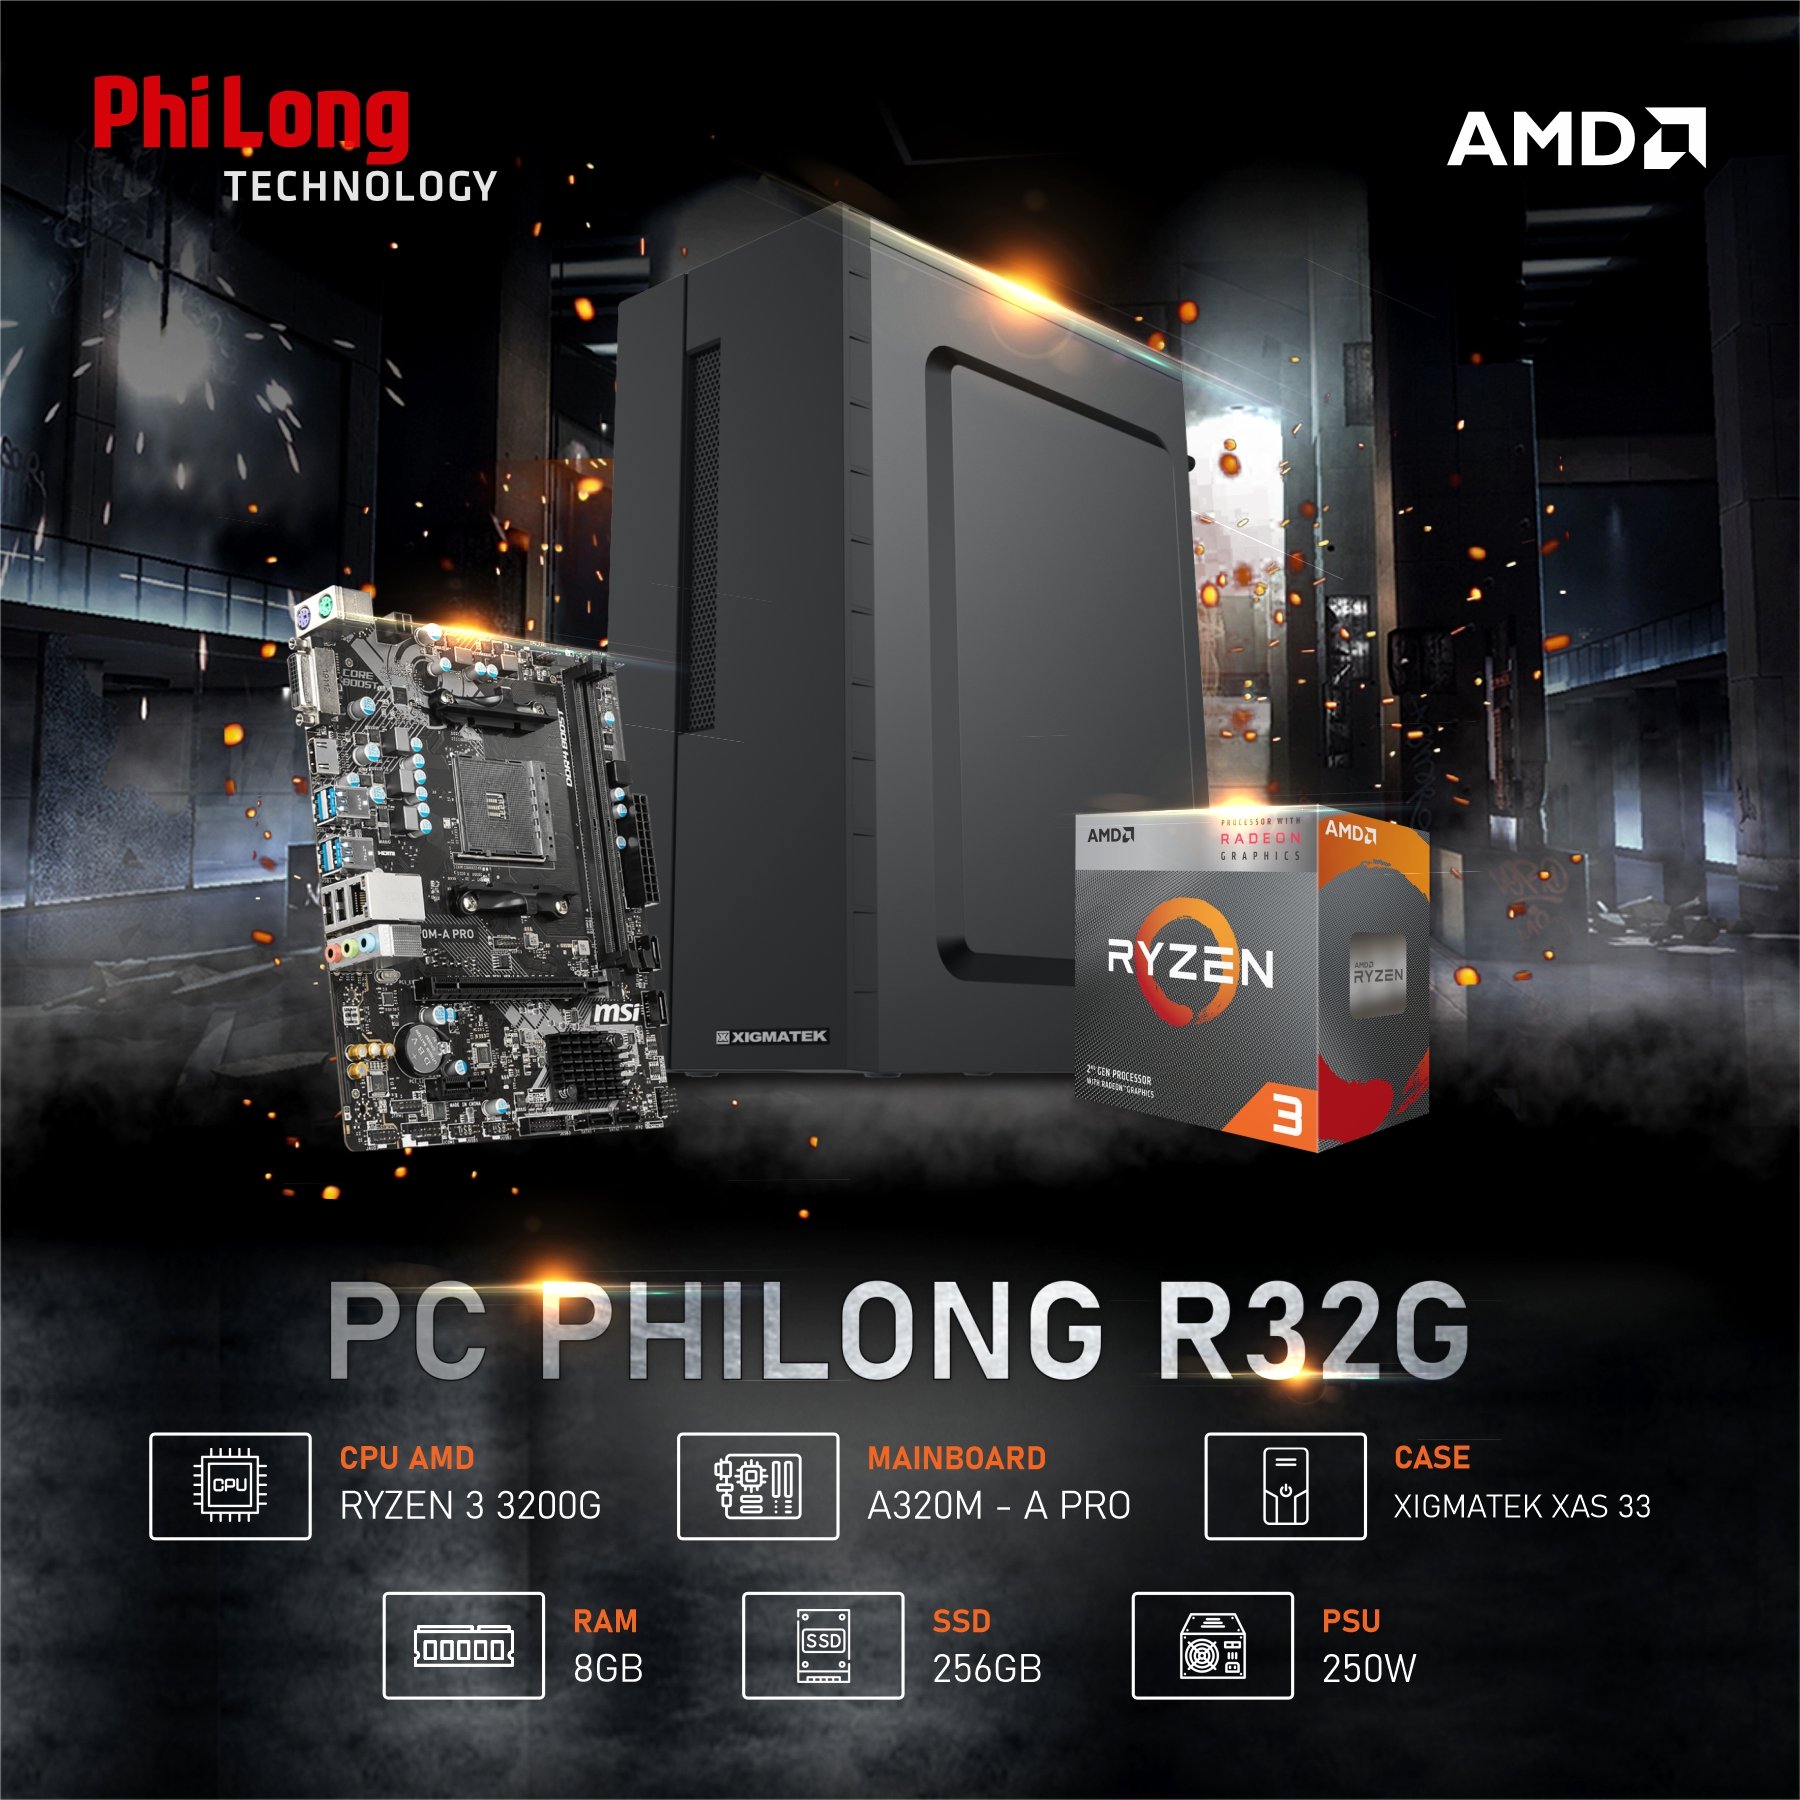 PC PHI LONG OFFICE R32G (RYZEN 3 3200G, A320M, RAM 8GB, SSD 256GB, PSU 250W)